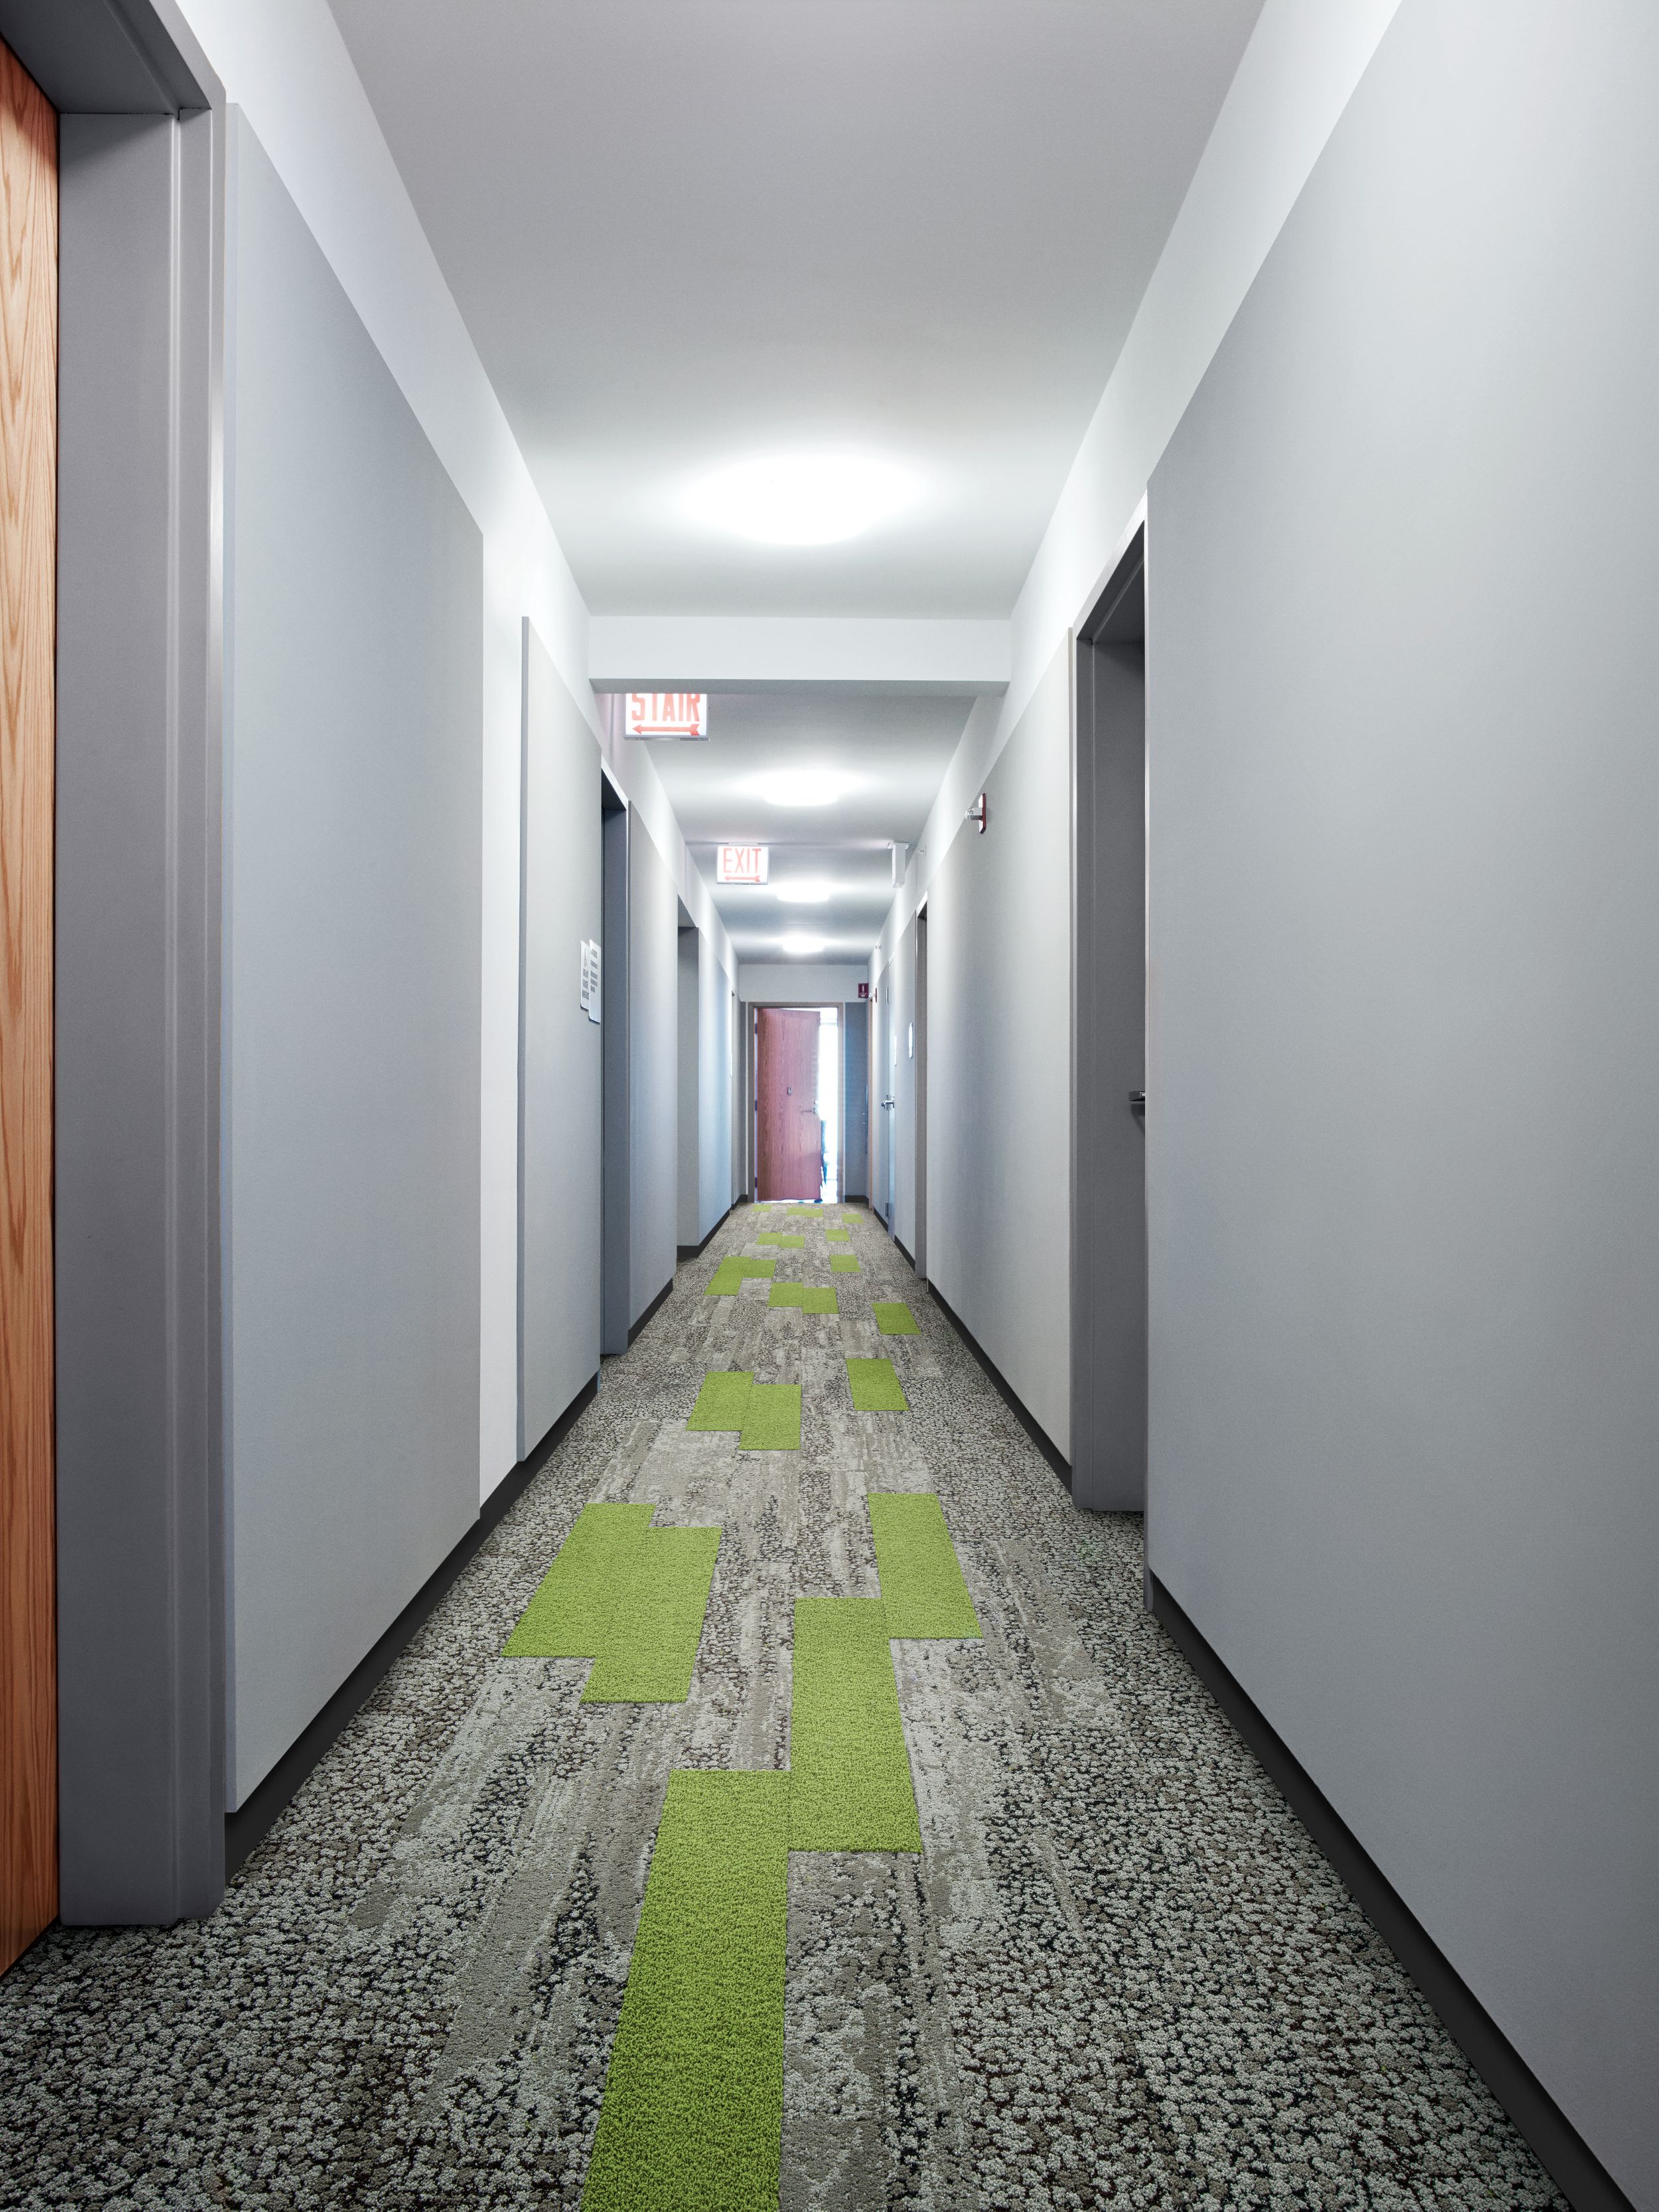 Interface HN830 and HN850 plank carpet tiles in long corridor with mutliple doors and wood door at end número de imagen 2